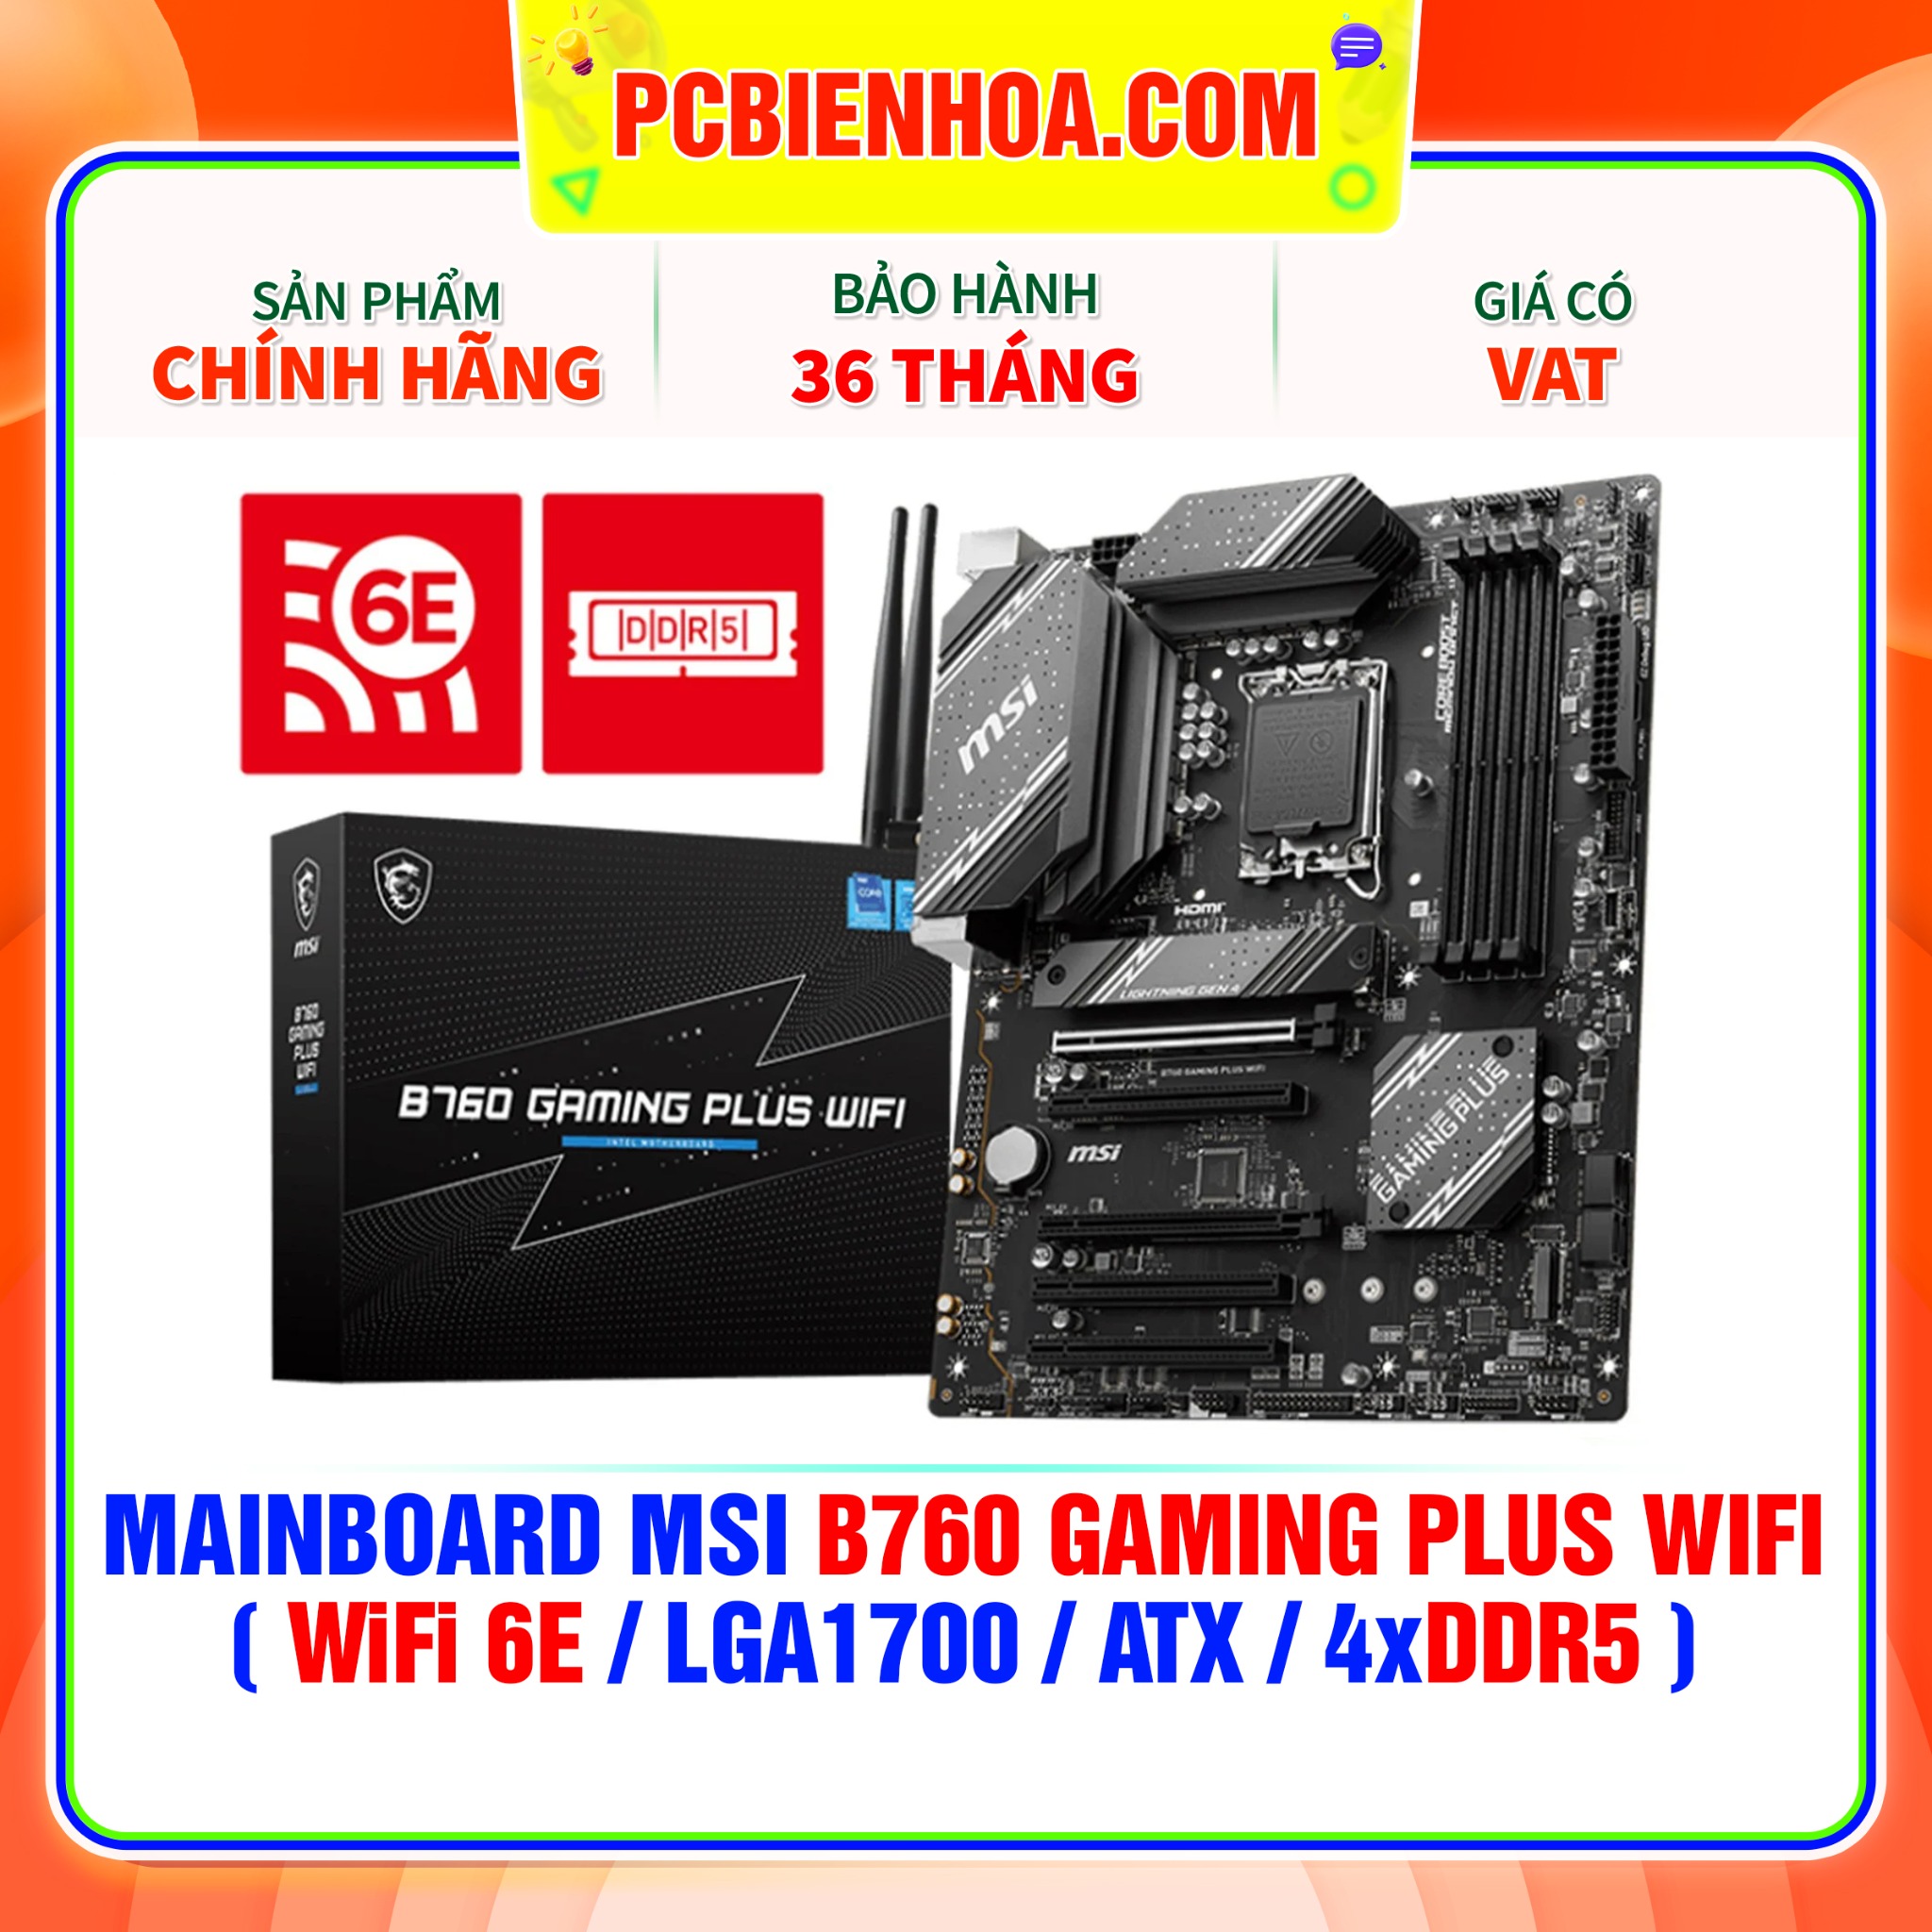 MAINBOARD MSI B760 GAMING PLUS WIFI  WiFi 6E LGA1700 ATX 4xDDR5